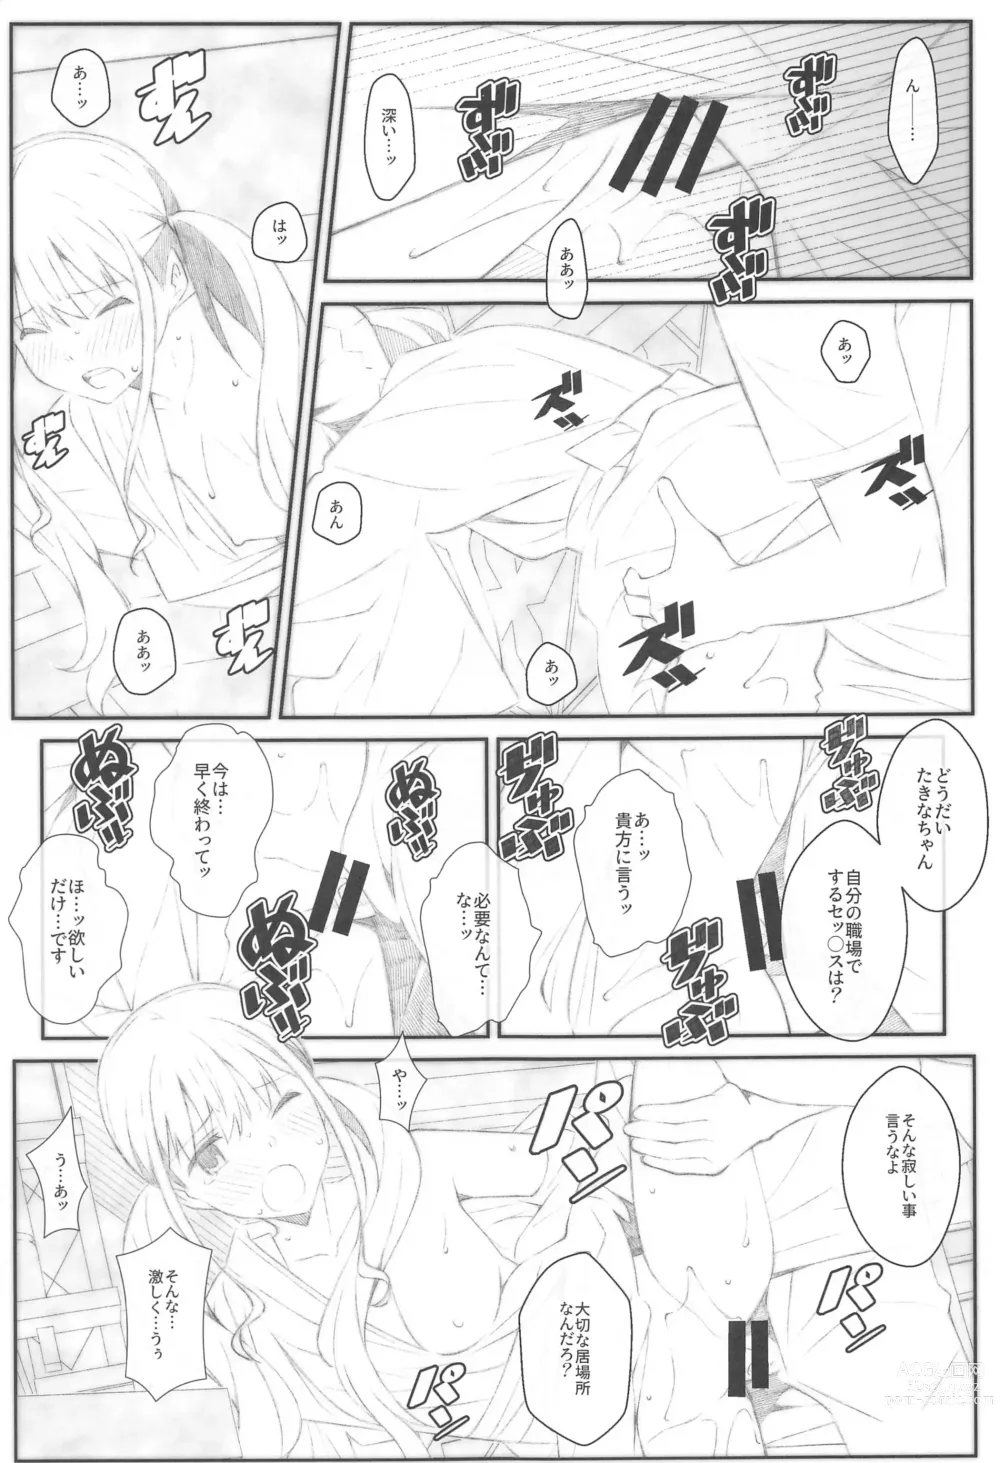 Page 14 of doujinshi TYPE-68b